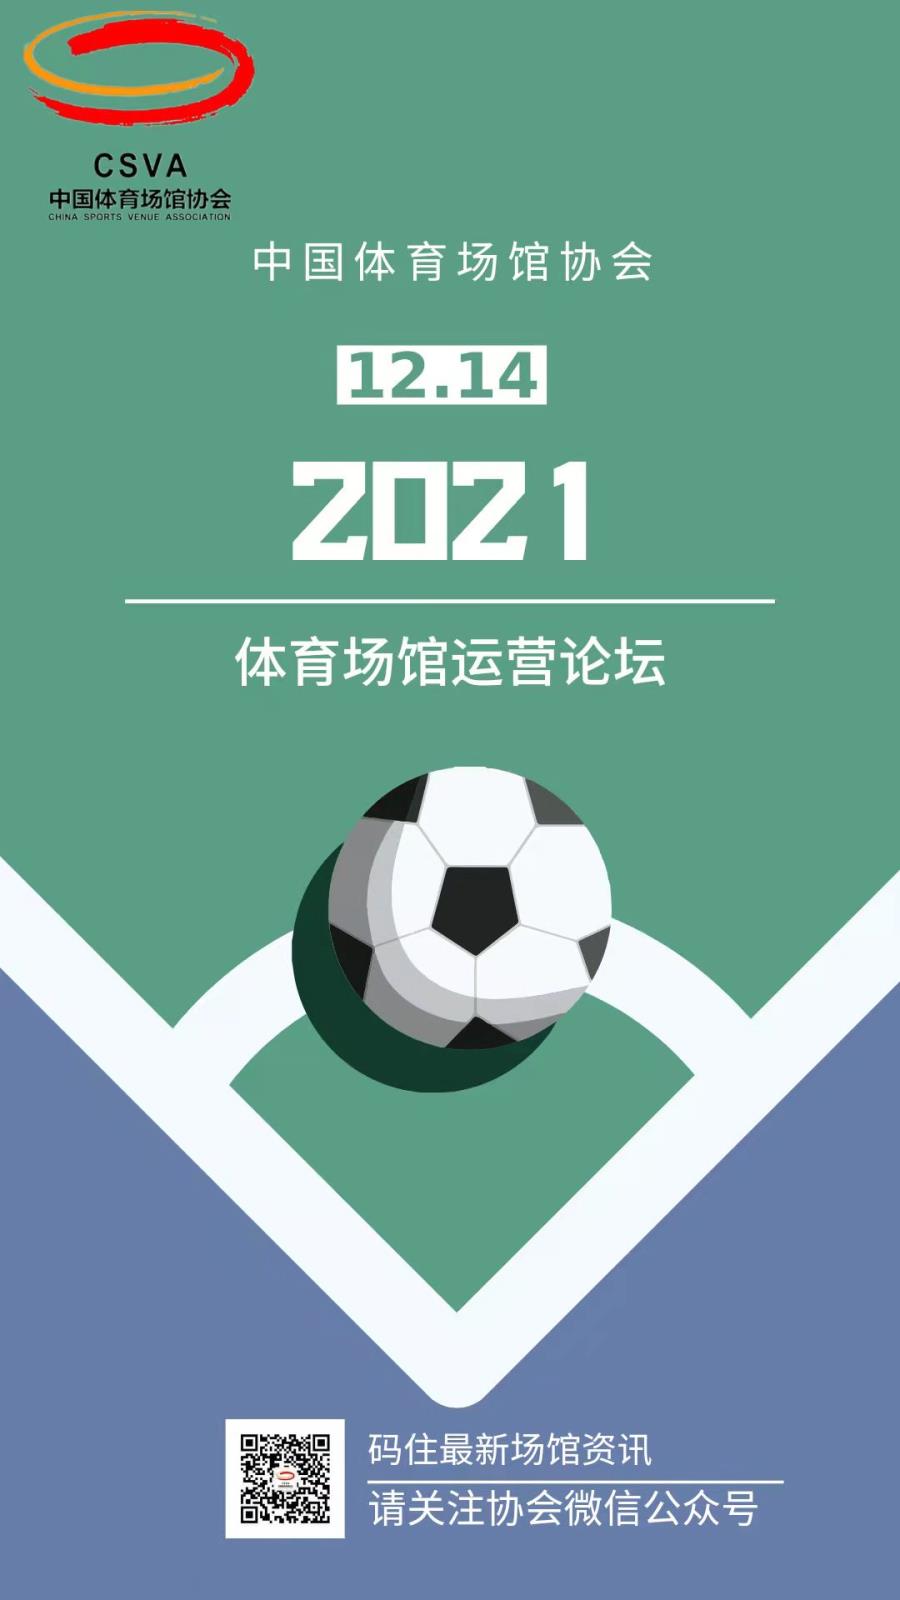 中国体育场馆协会2021年体育场馆运营论坛即将启幕.jpg